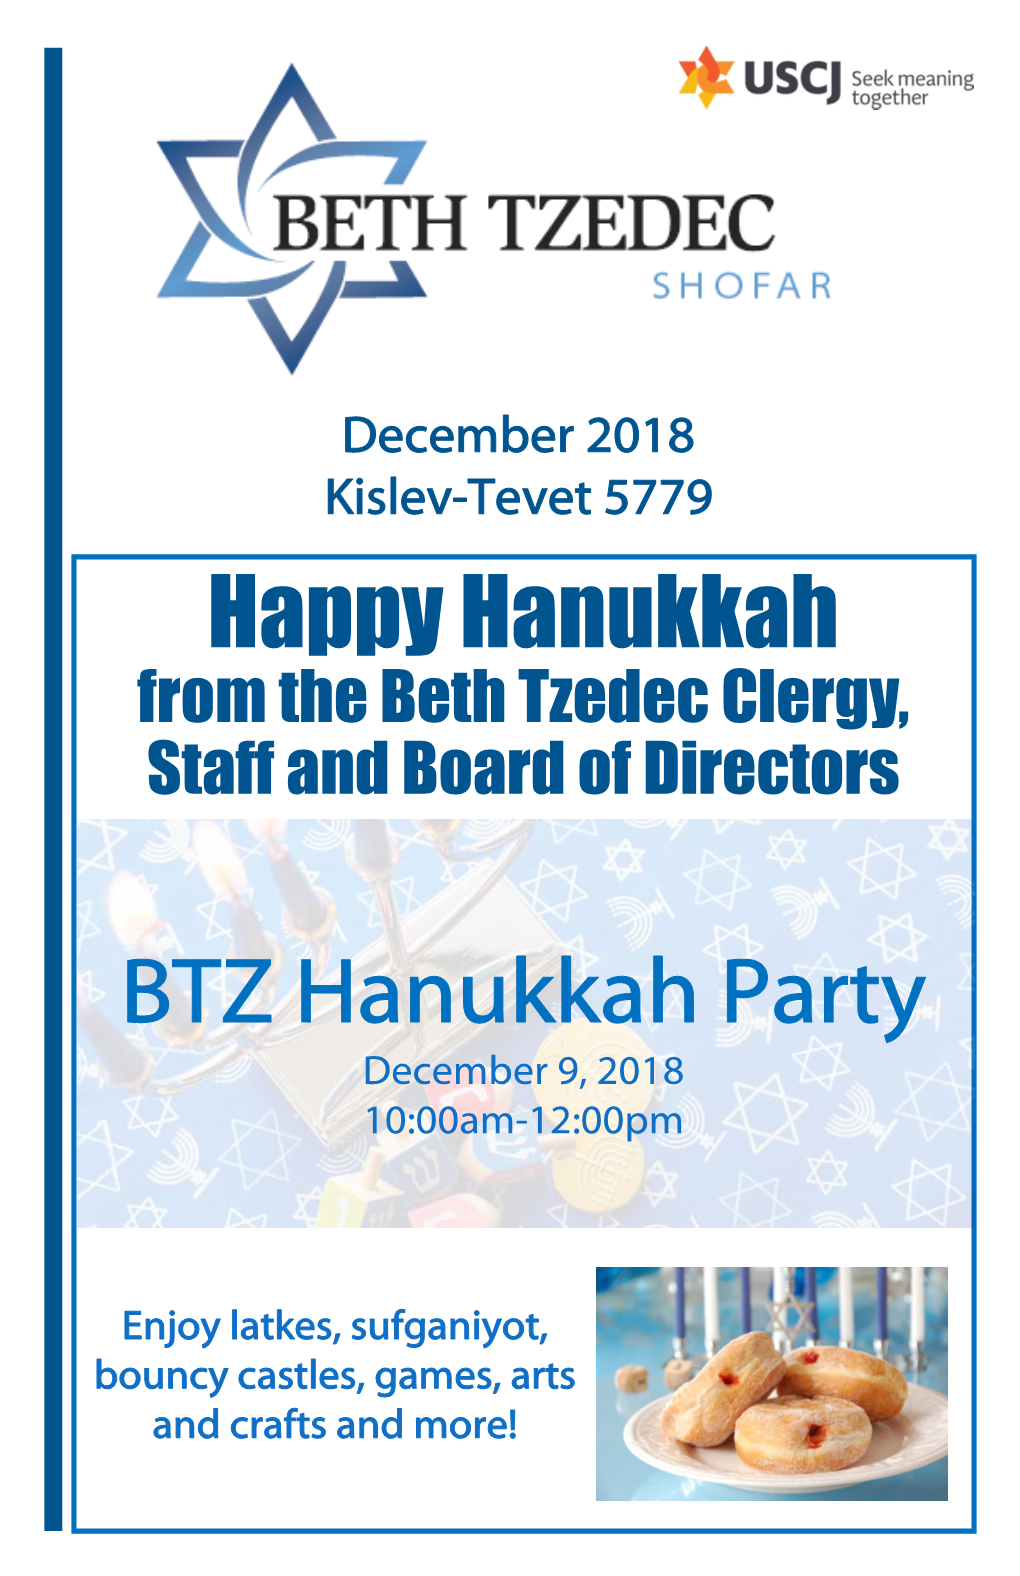 BTZ Hanukkah Party Happy Hanukkah